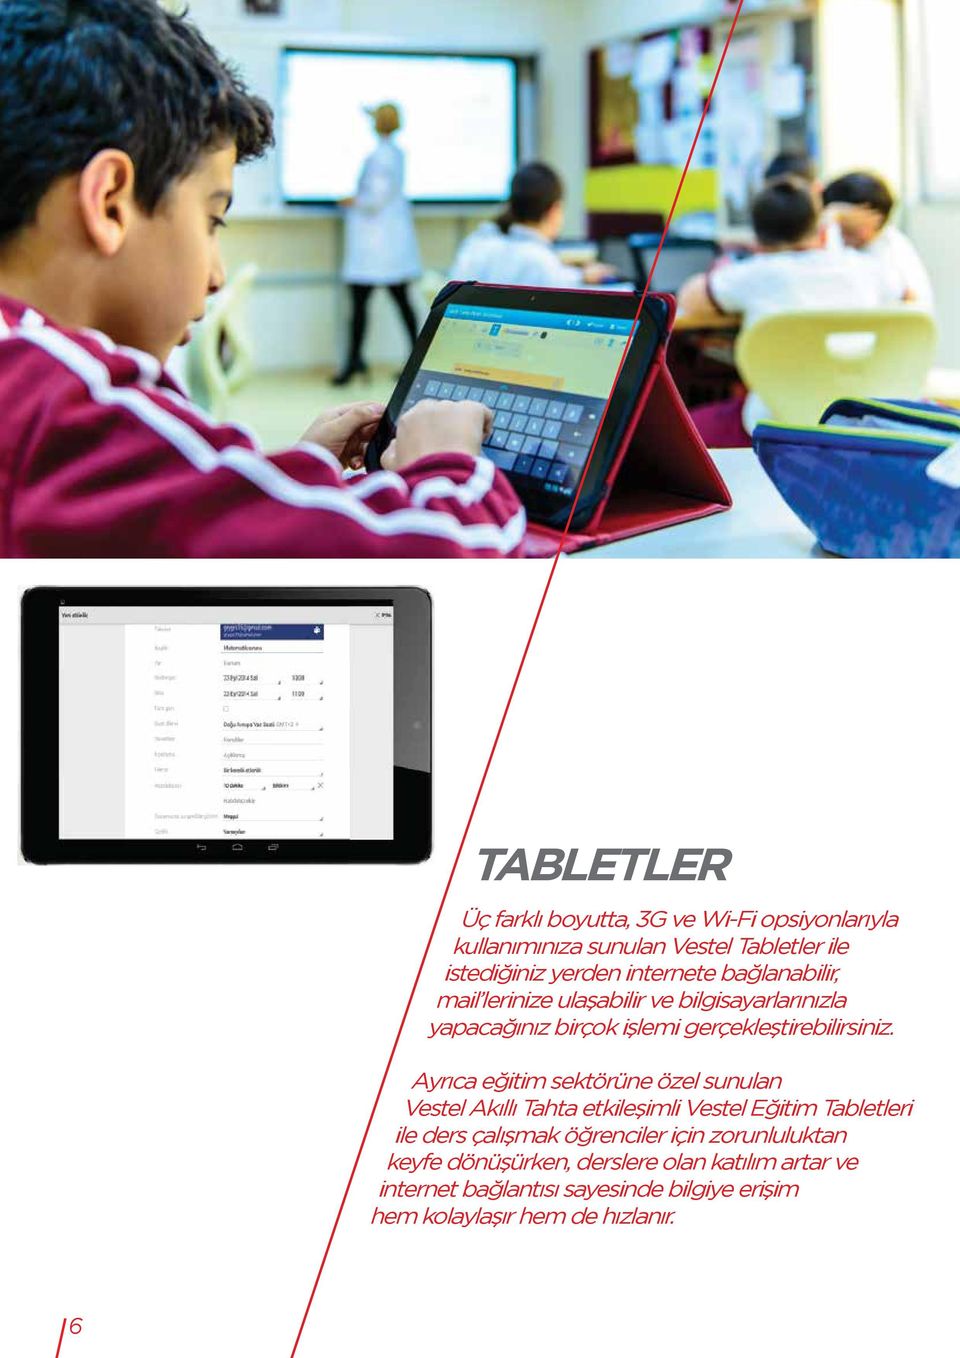 Ayrıca eğitim sektörüne özel sunulan Vestel Akıllı Tahta etkileşimli Vestel Eğitim Tabletleri ile ders çalışmak öğrenciler için